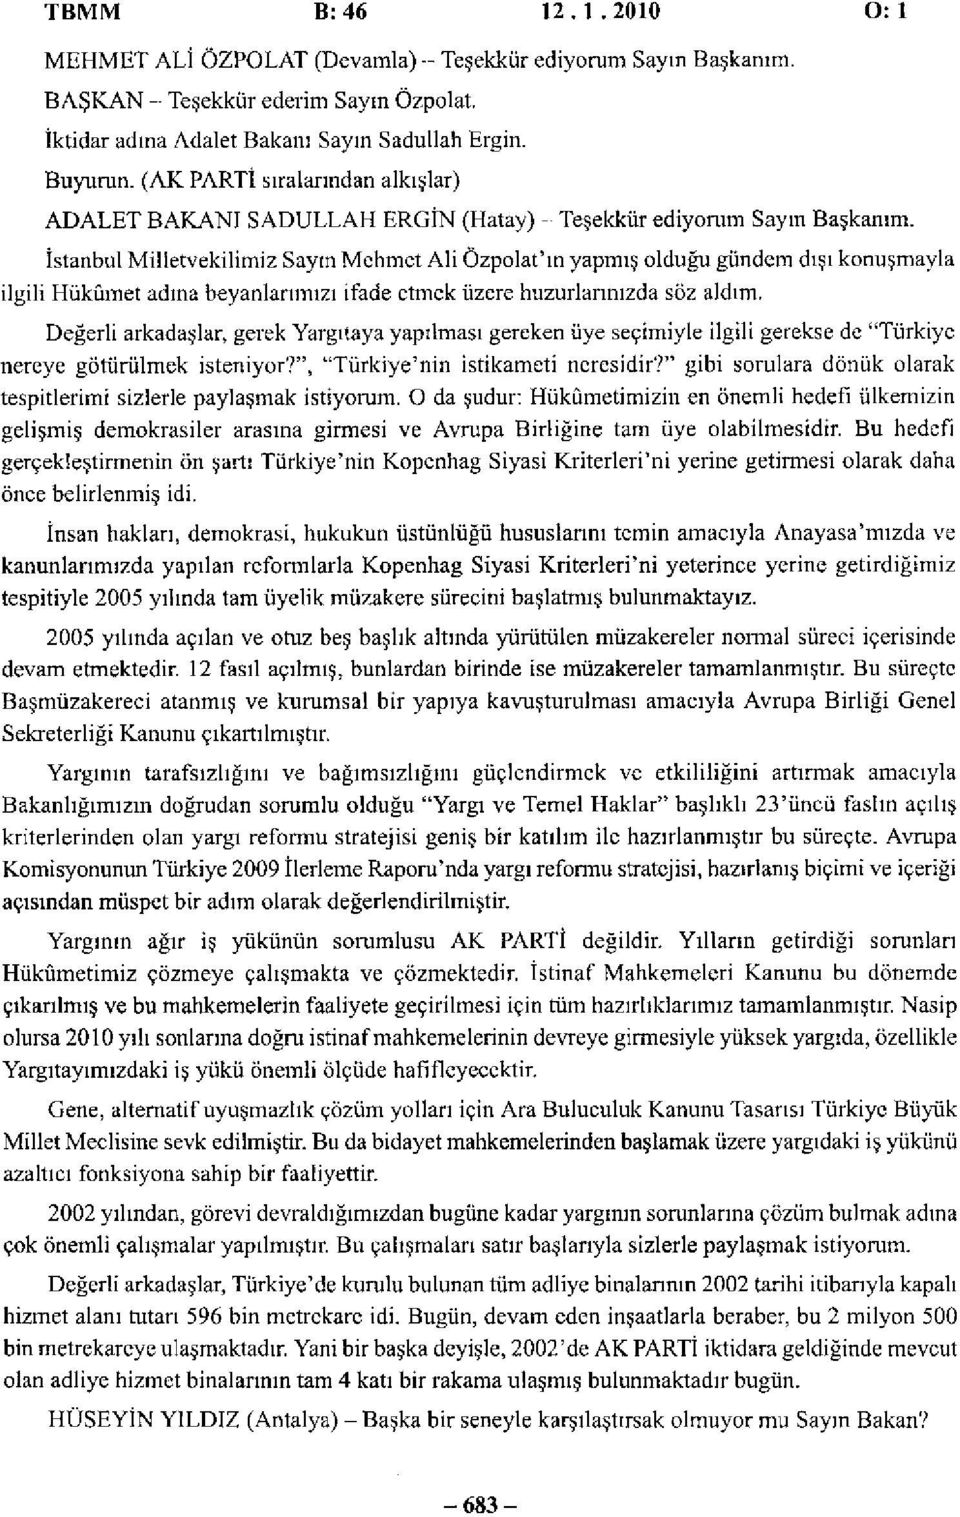 İstanbul Milletvekilimiz Sayın Mehmet Ali Özpolat'ın yapmış olduğu gündem dışı konuşmayla ilgili Hükümet adına beyanlarımızı ifade etmek üzere huzurlarınızda söz aldım.